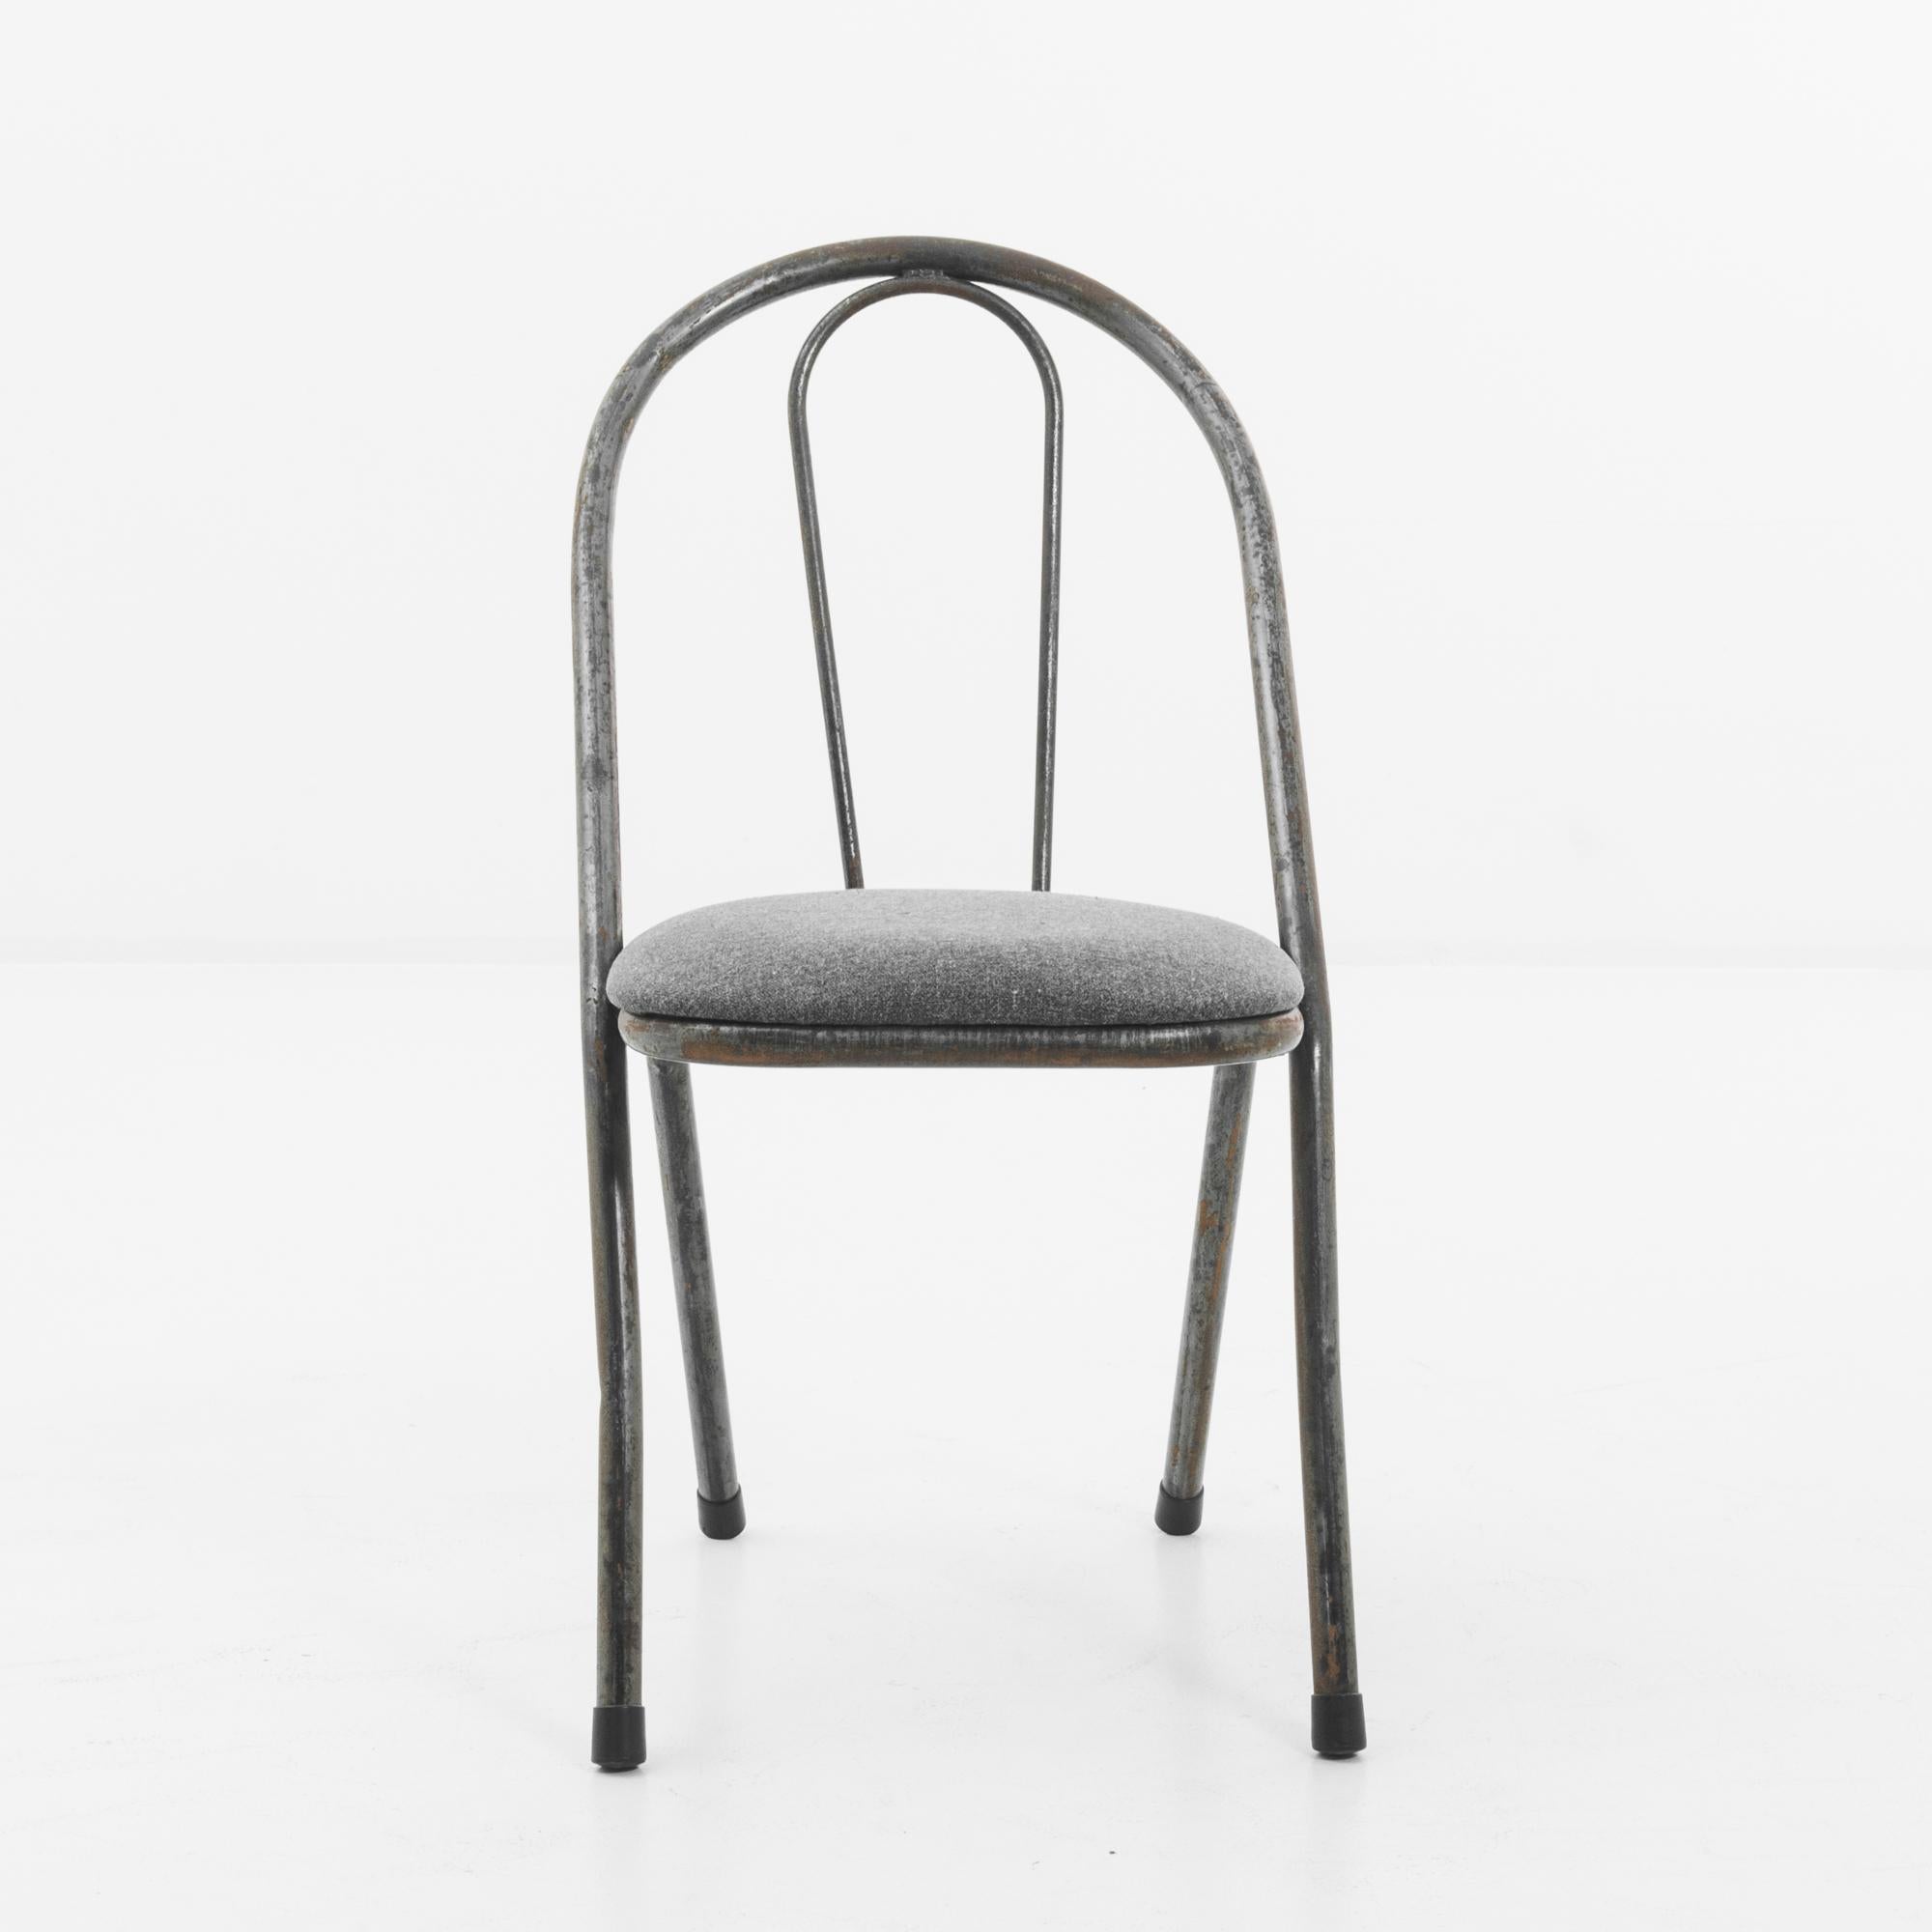 Chaise en métal du Royaume-Uni, produite vers 1950. Une chaise de type Windsor ; deux tiges principales en métal plié avec des pieds en caoutchouc s'enroulent autour d'un coussin moelleux dans un gris anthracite clair. Rappelant les costumes en